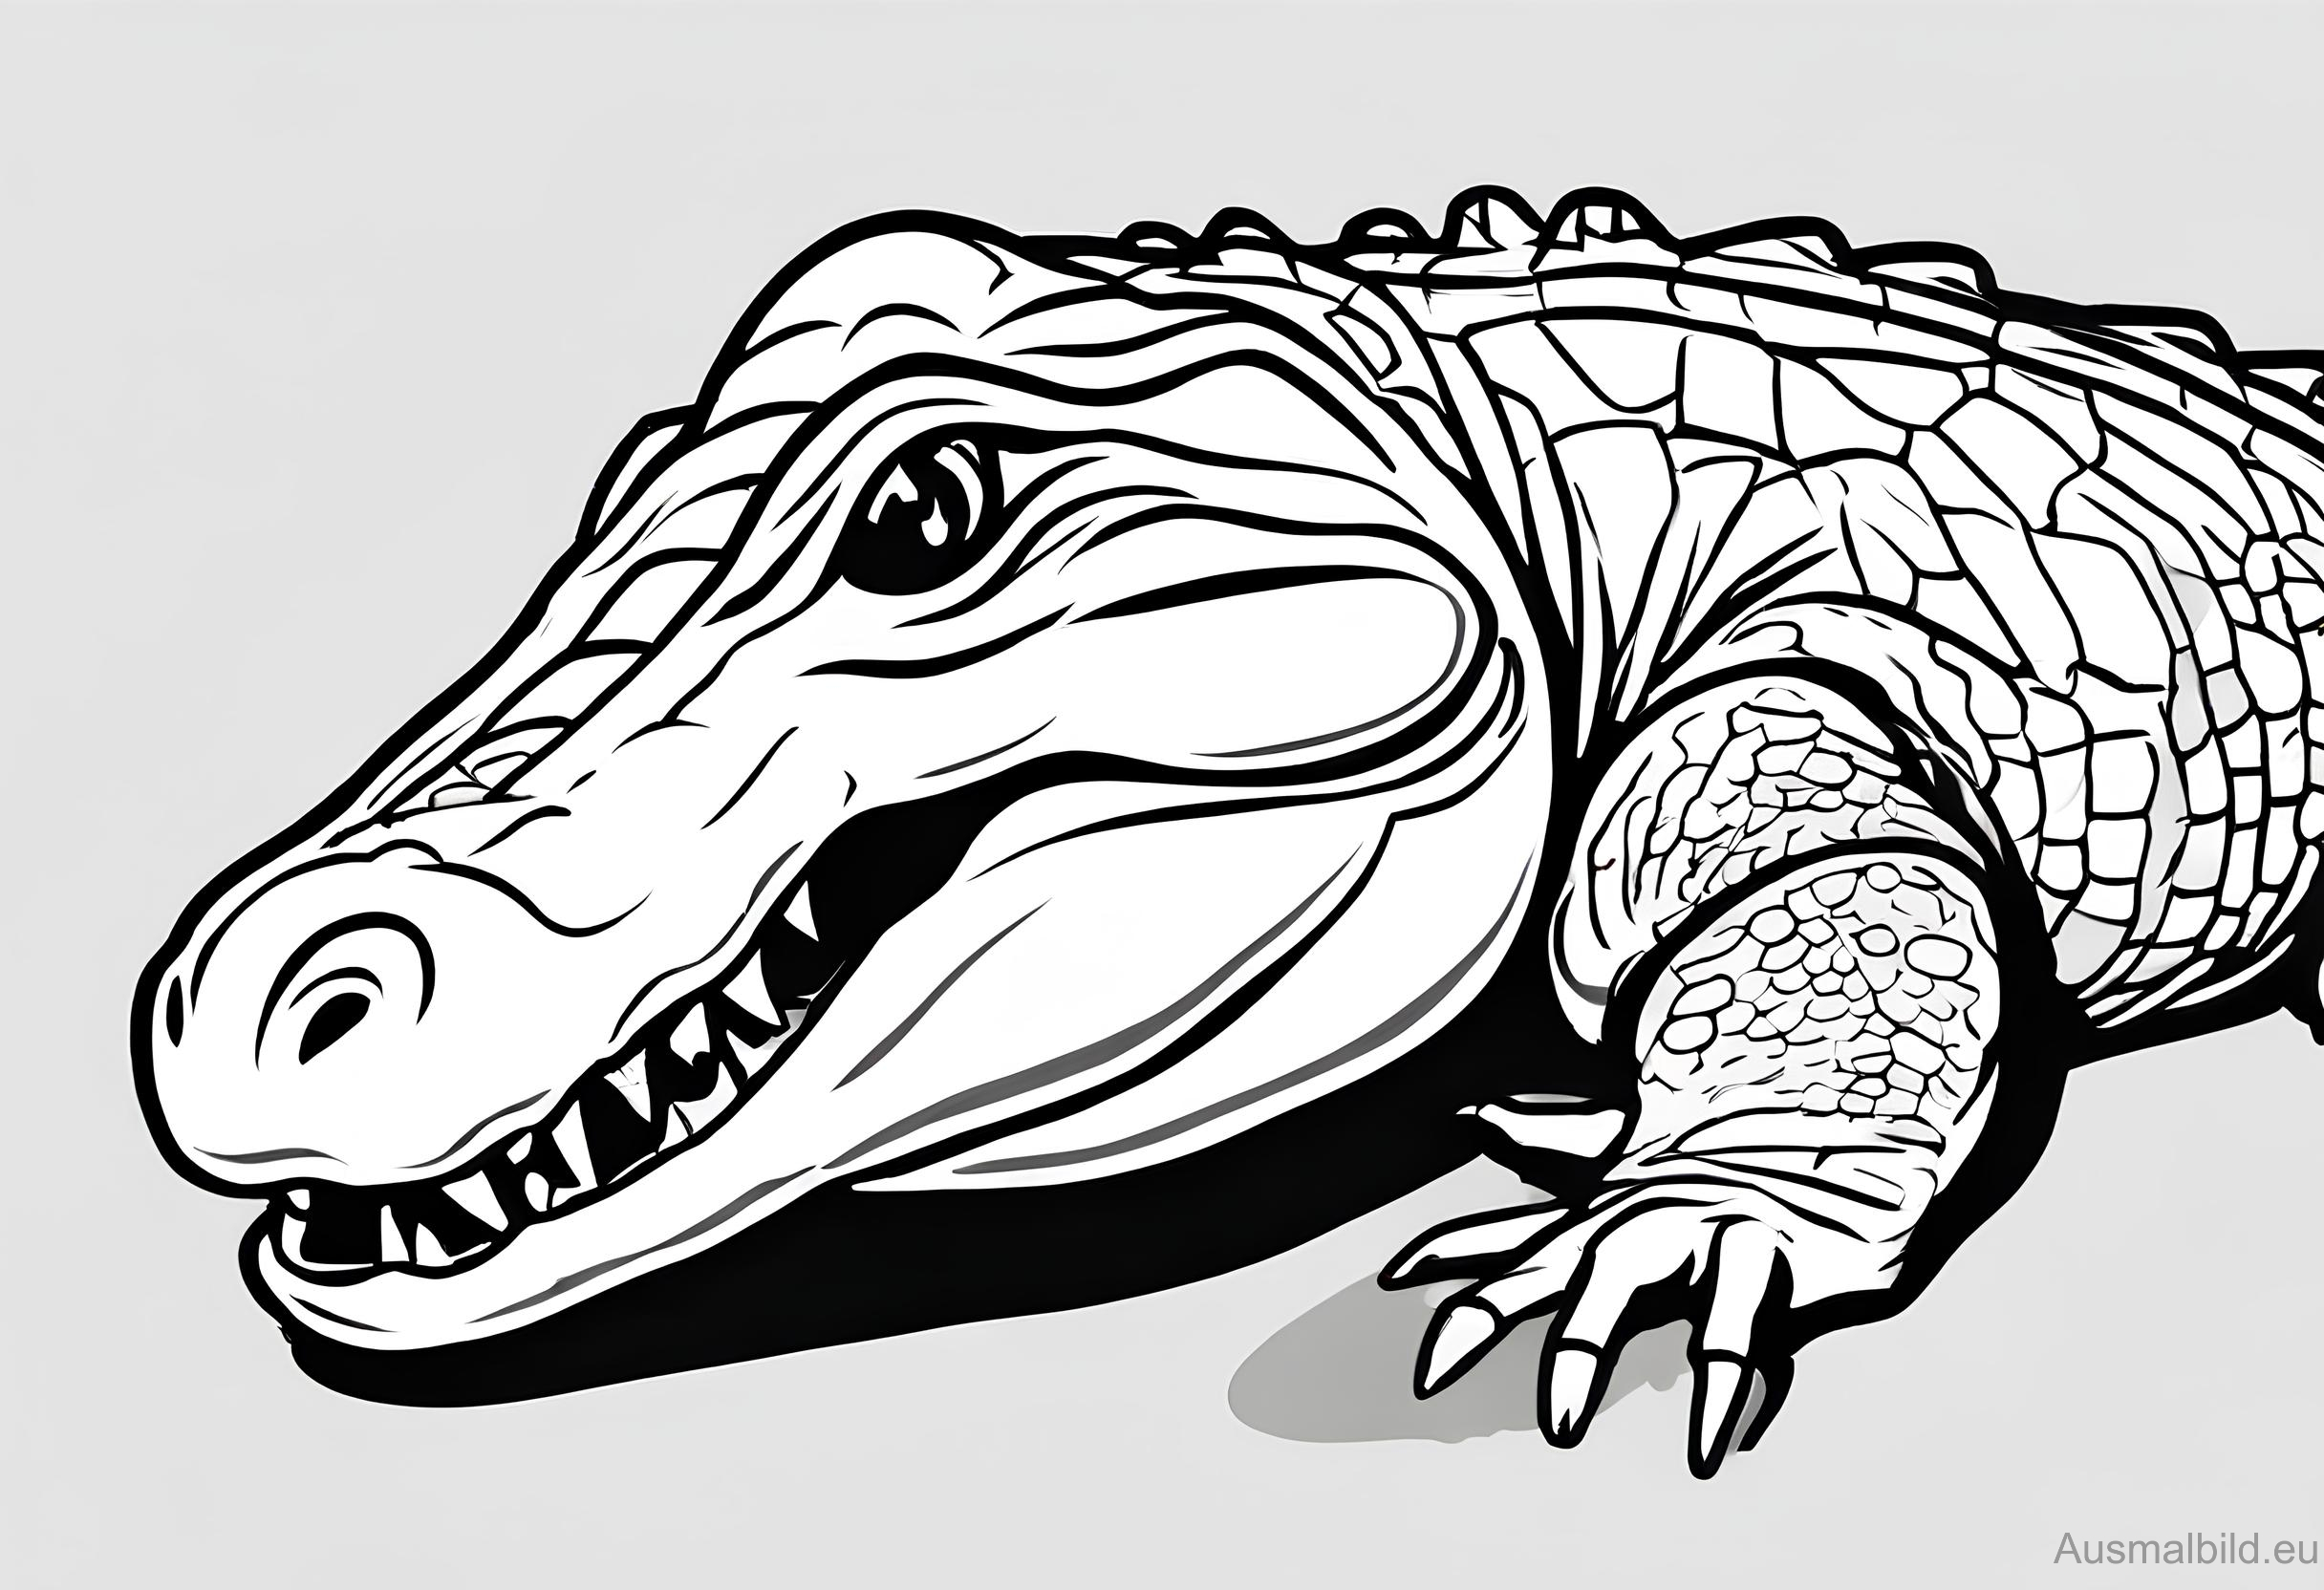 Ausmalbild: Alligator